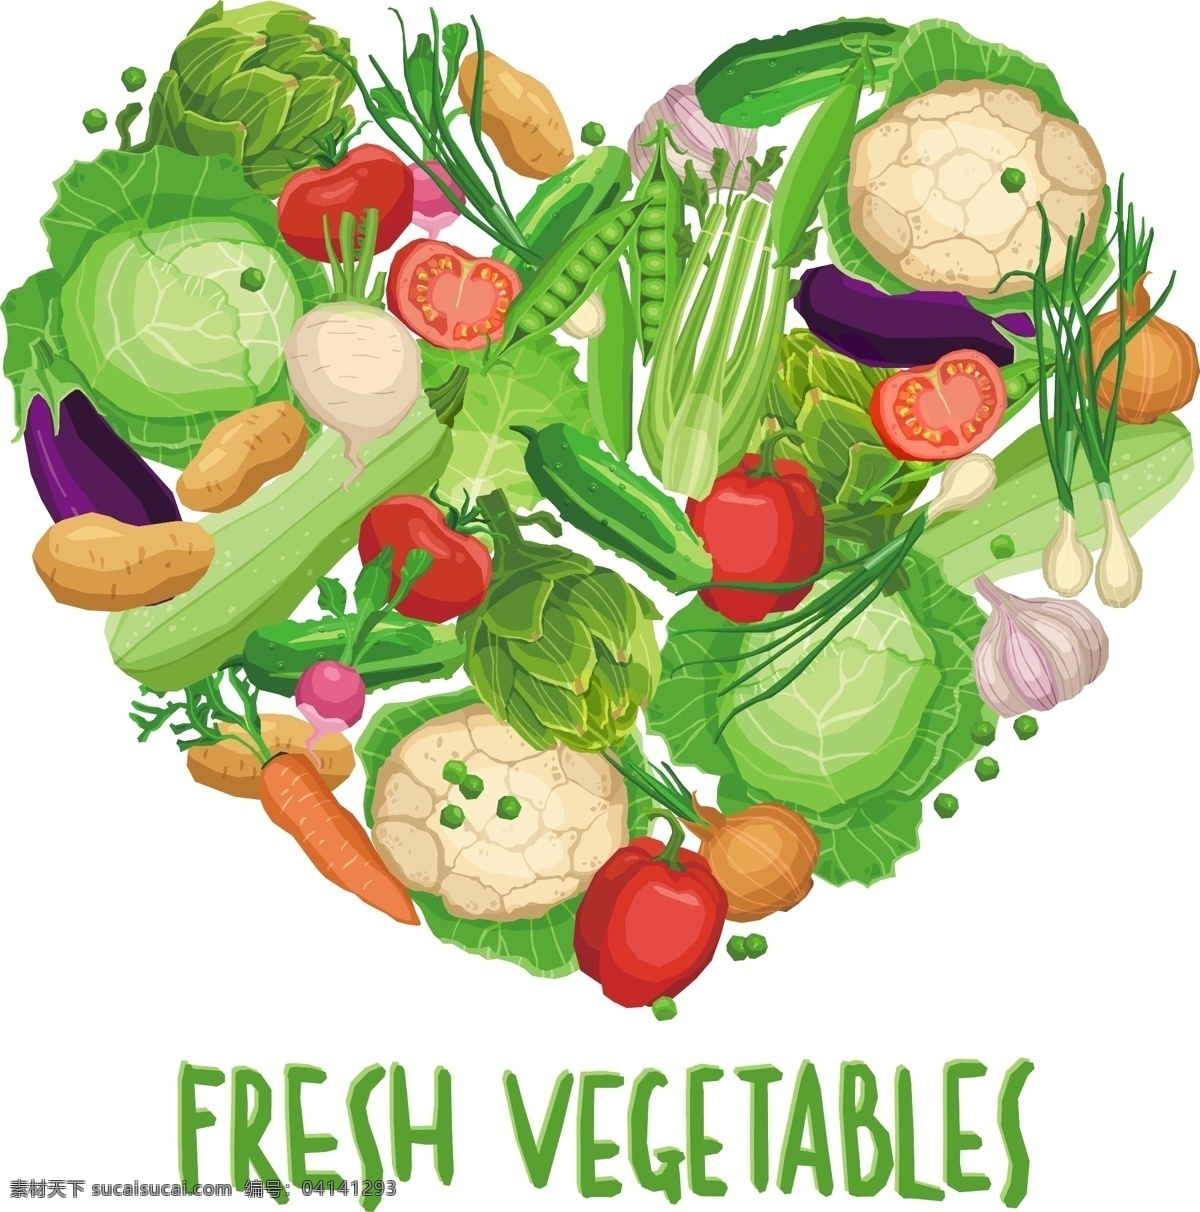 彩色 手绘 蔬菜水果 卡通 矢量 几何 英文 矢量素材 设计素材 平面素材